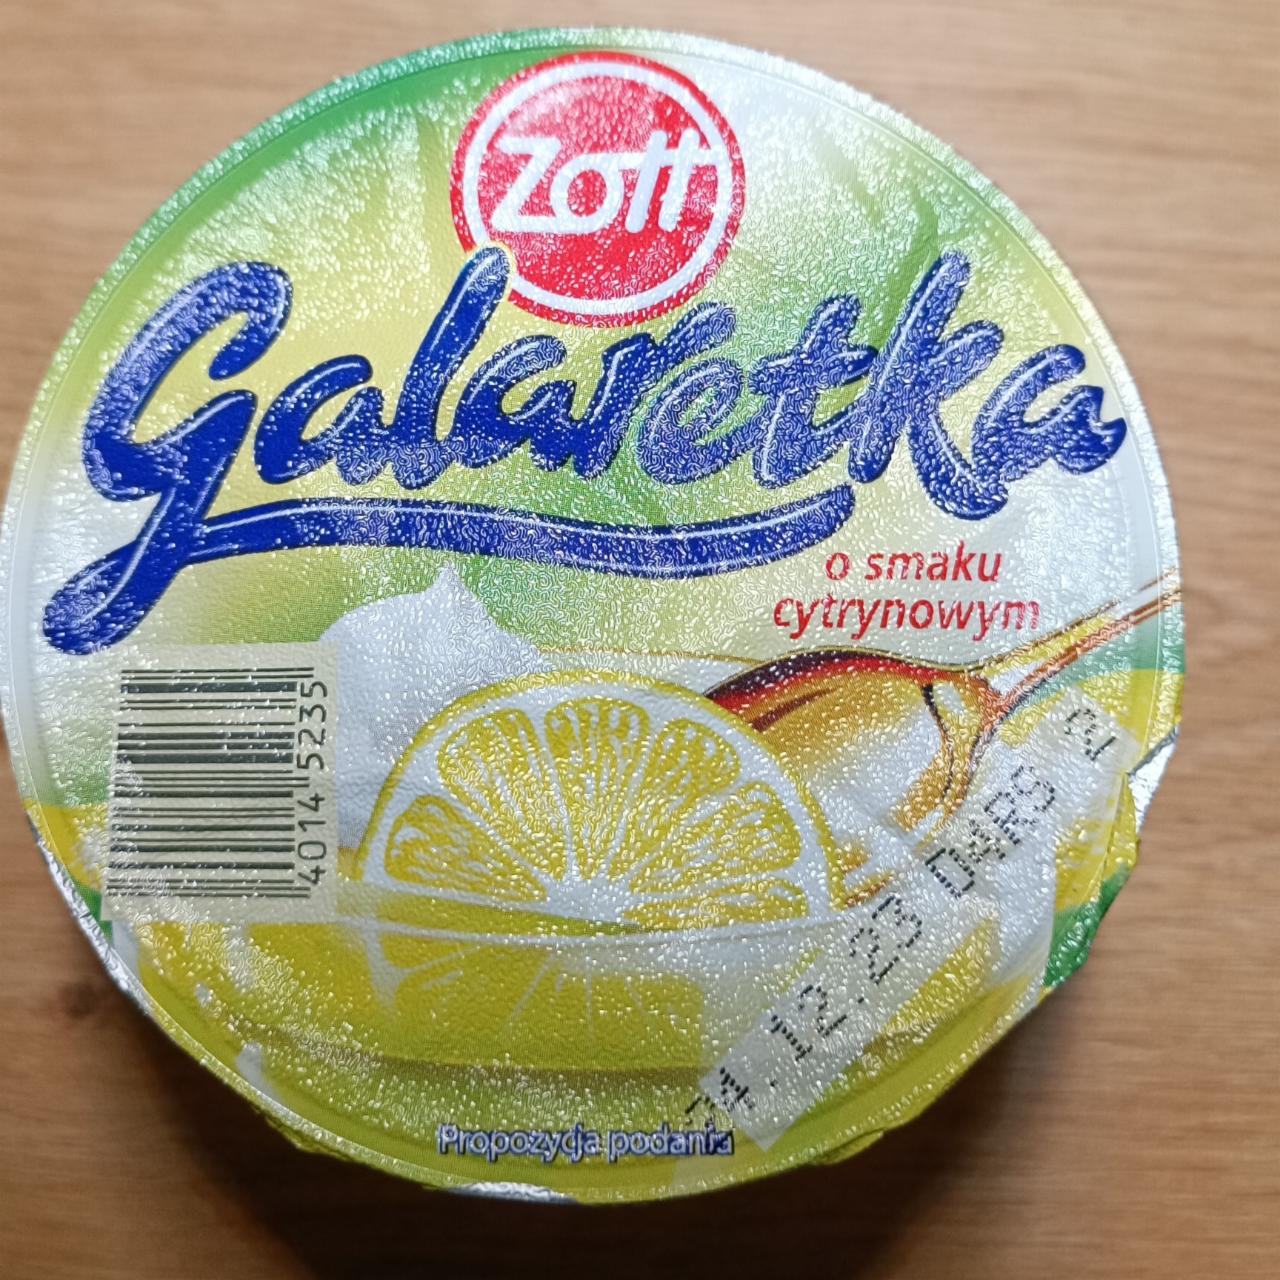 Fotografie - Galaretka o smaku cytrynowym Zott